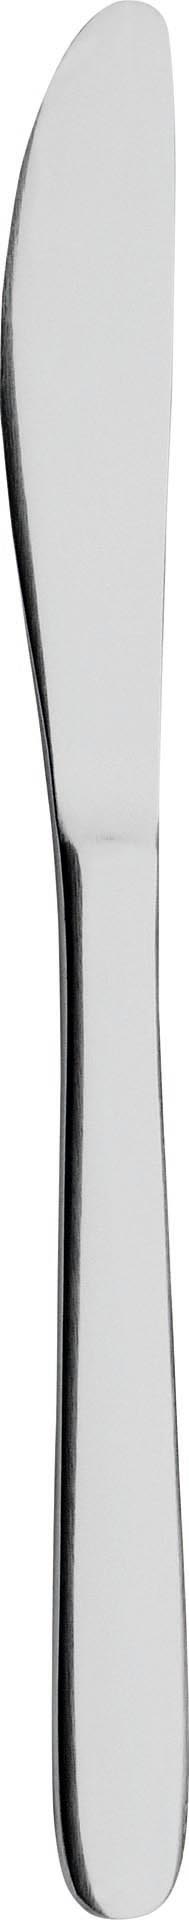 Besteckserie "Modell 100" 2,2 mm 18/0 Tafelmesser